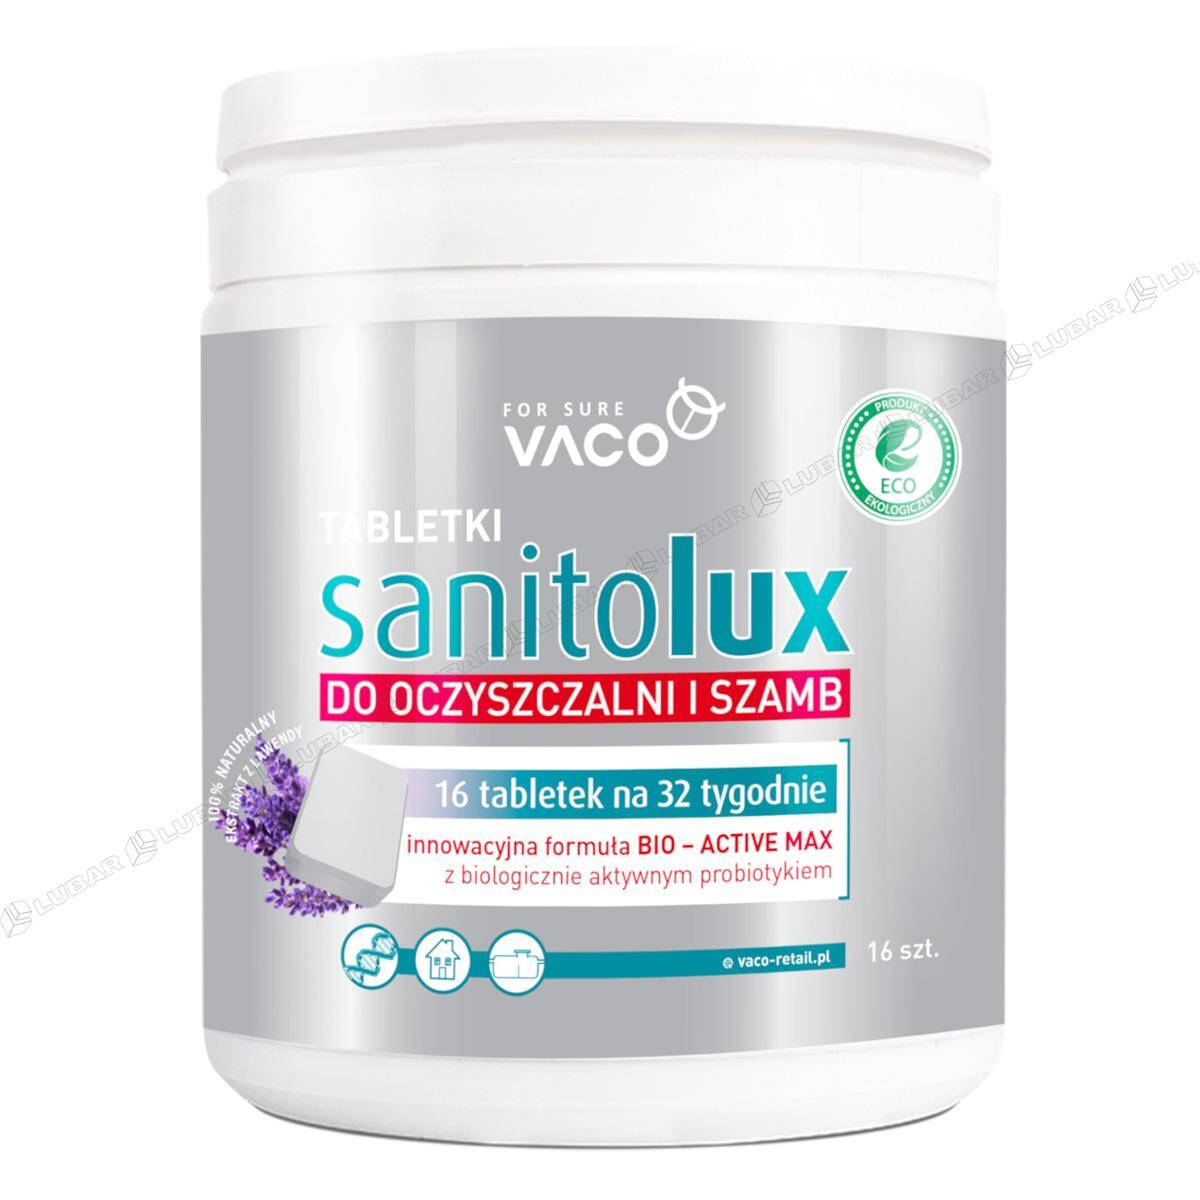 Sanitolux bioaktywator do oszyszczalni i szamb w tabletkach (16 szt./op.)